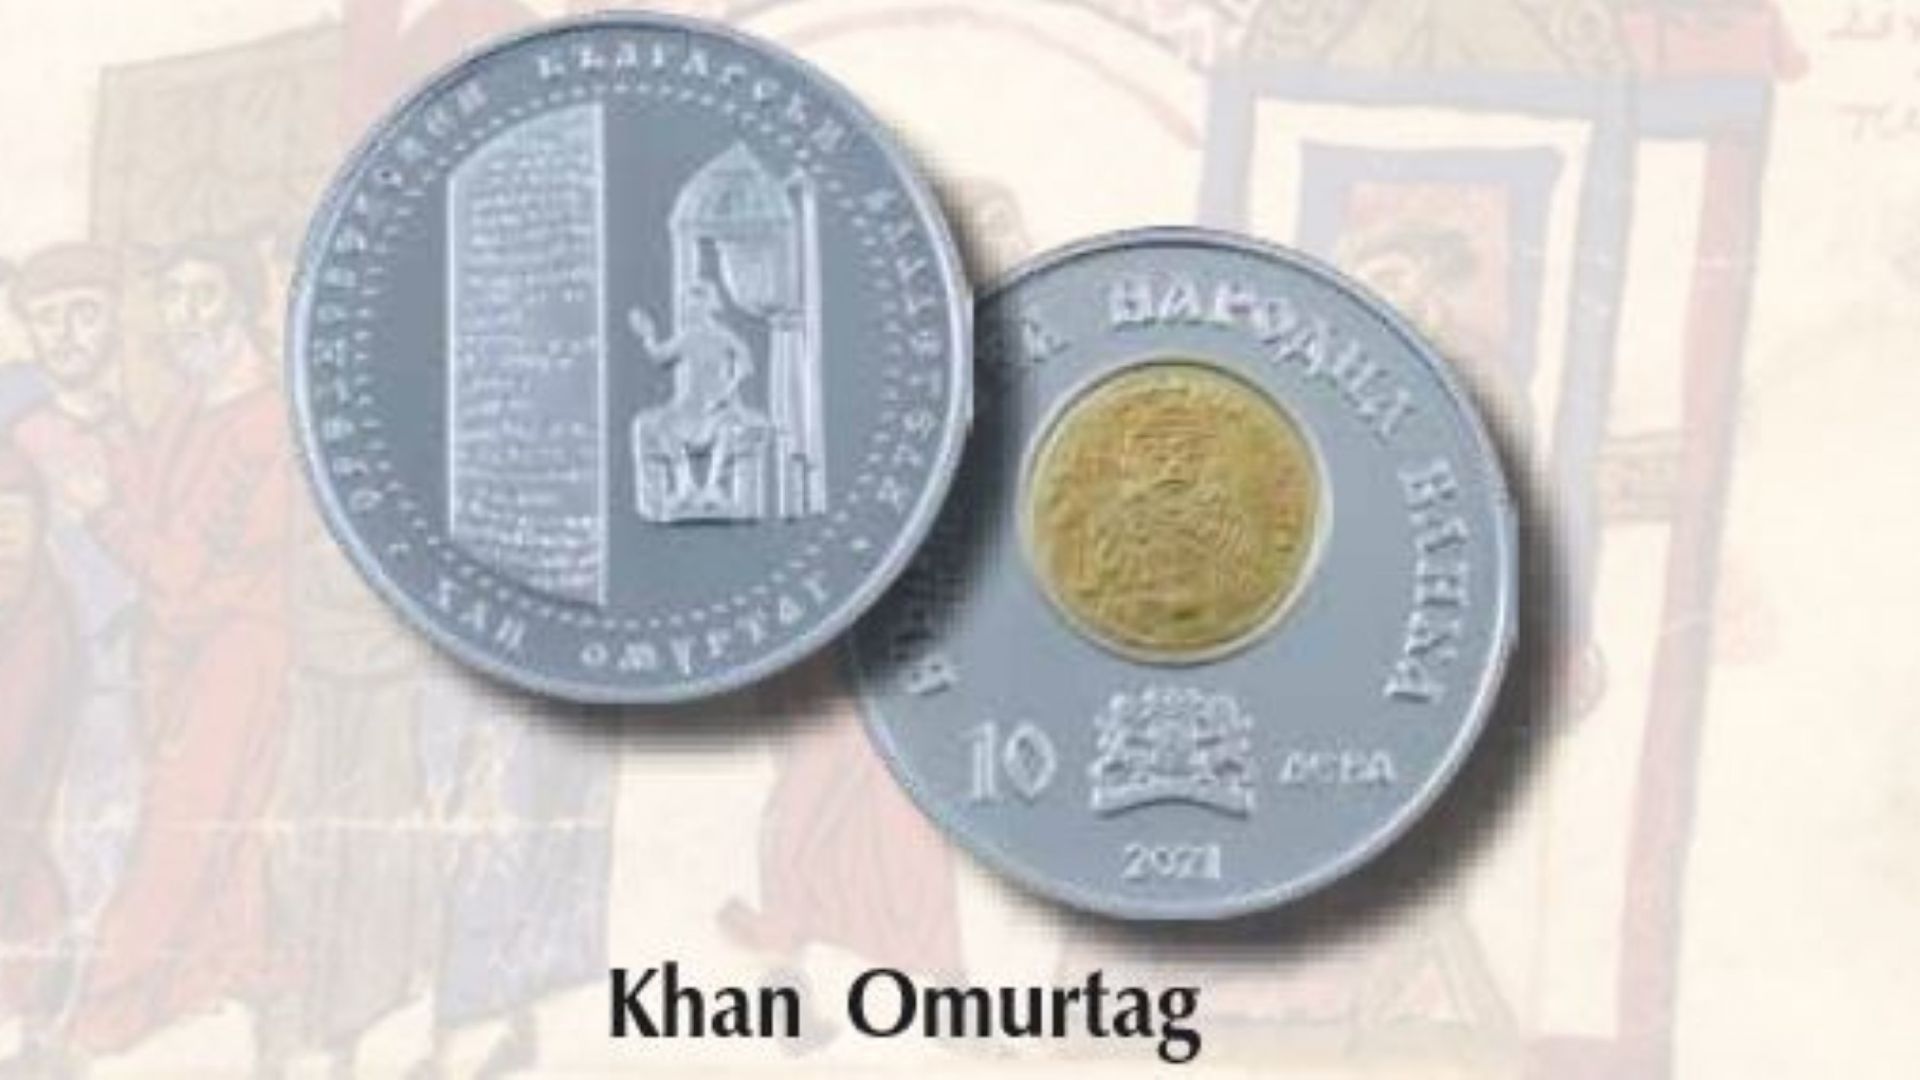 БНБ пусна сребърна възпоменателна монета на тема "Хан Омуртаг"